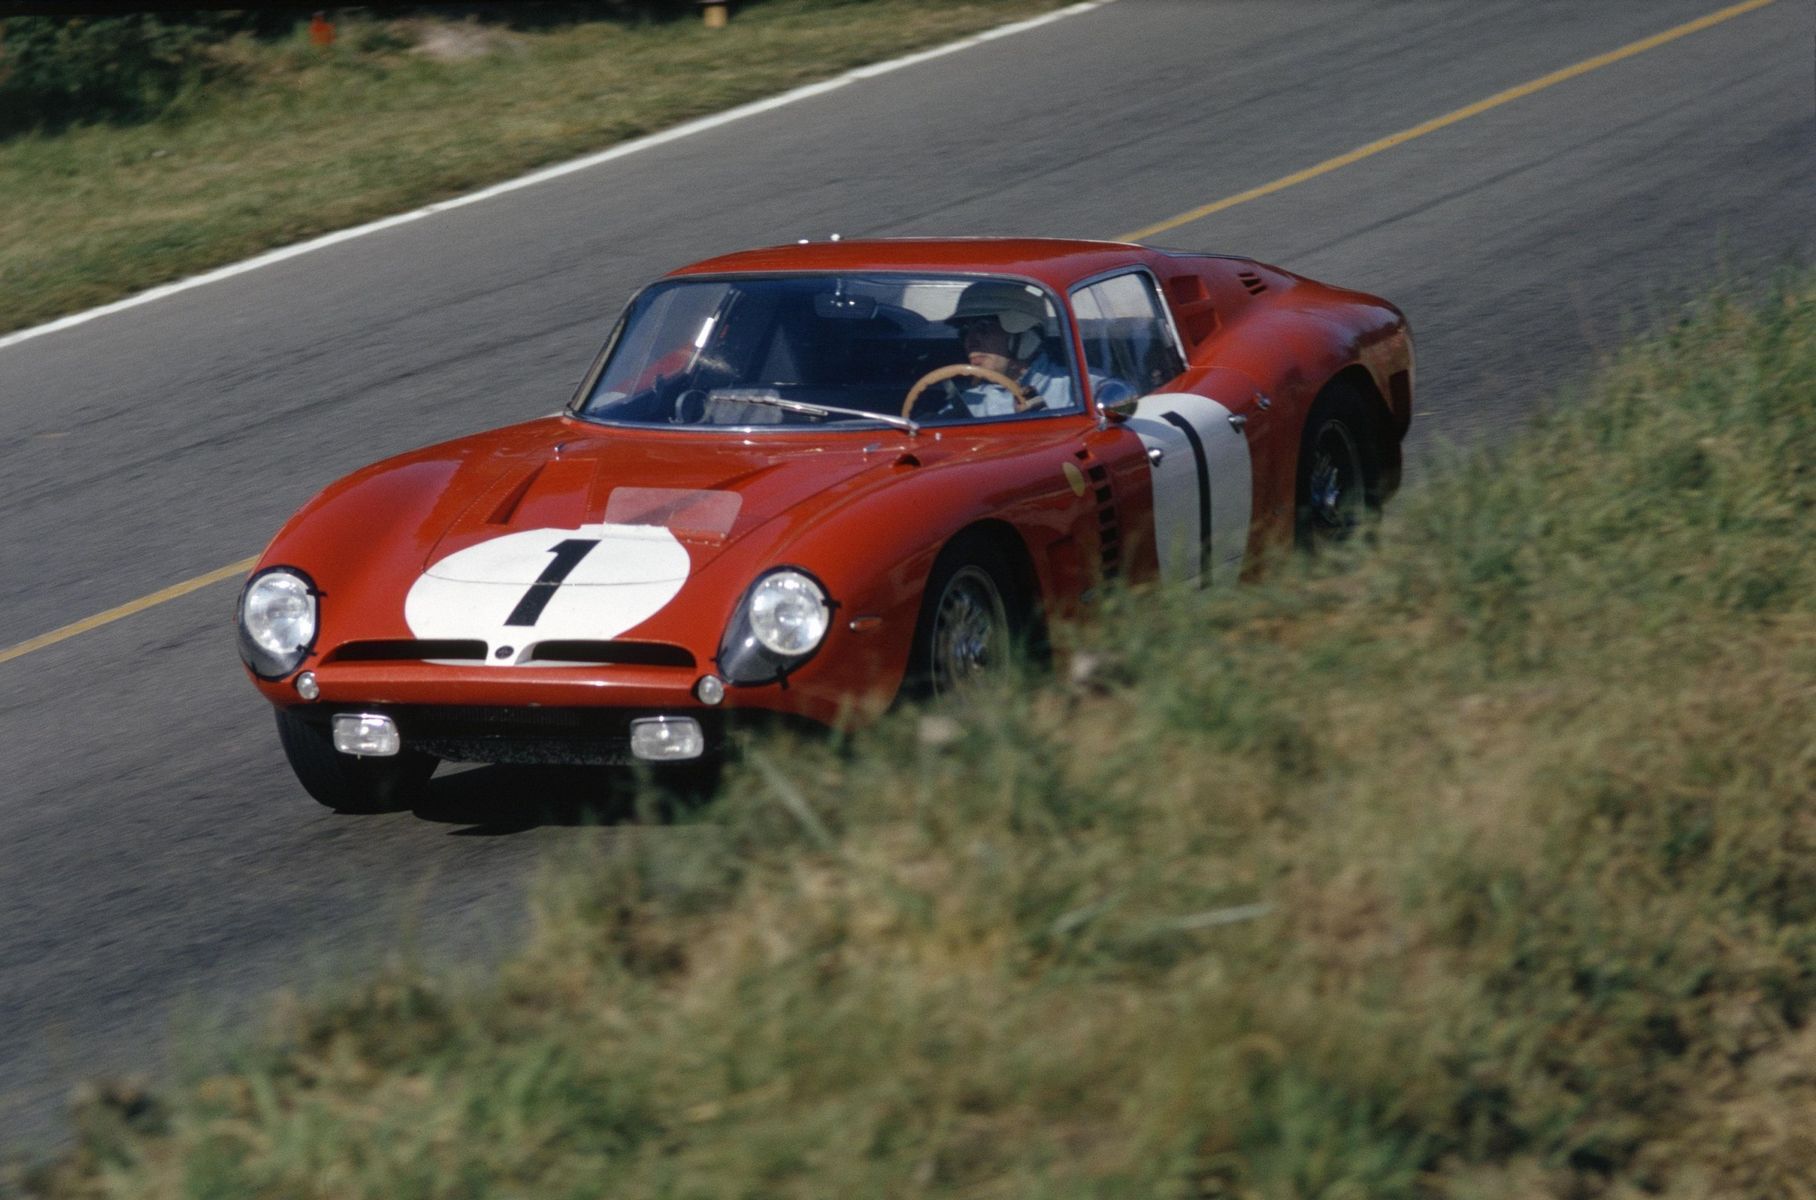 Марафон «24 часа Ле-Мана» в 1964 году: экипаж Пьер Нобле/Эдгар Берней на Iso Grifo A3/C финишировал на 14-м месте в абсолютном зачёте